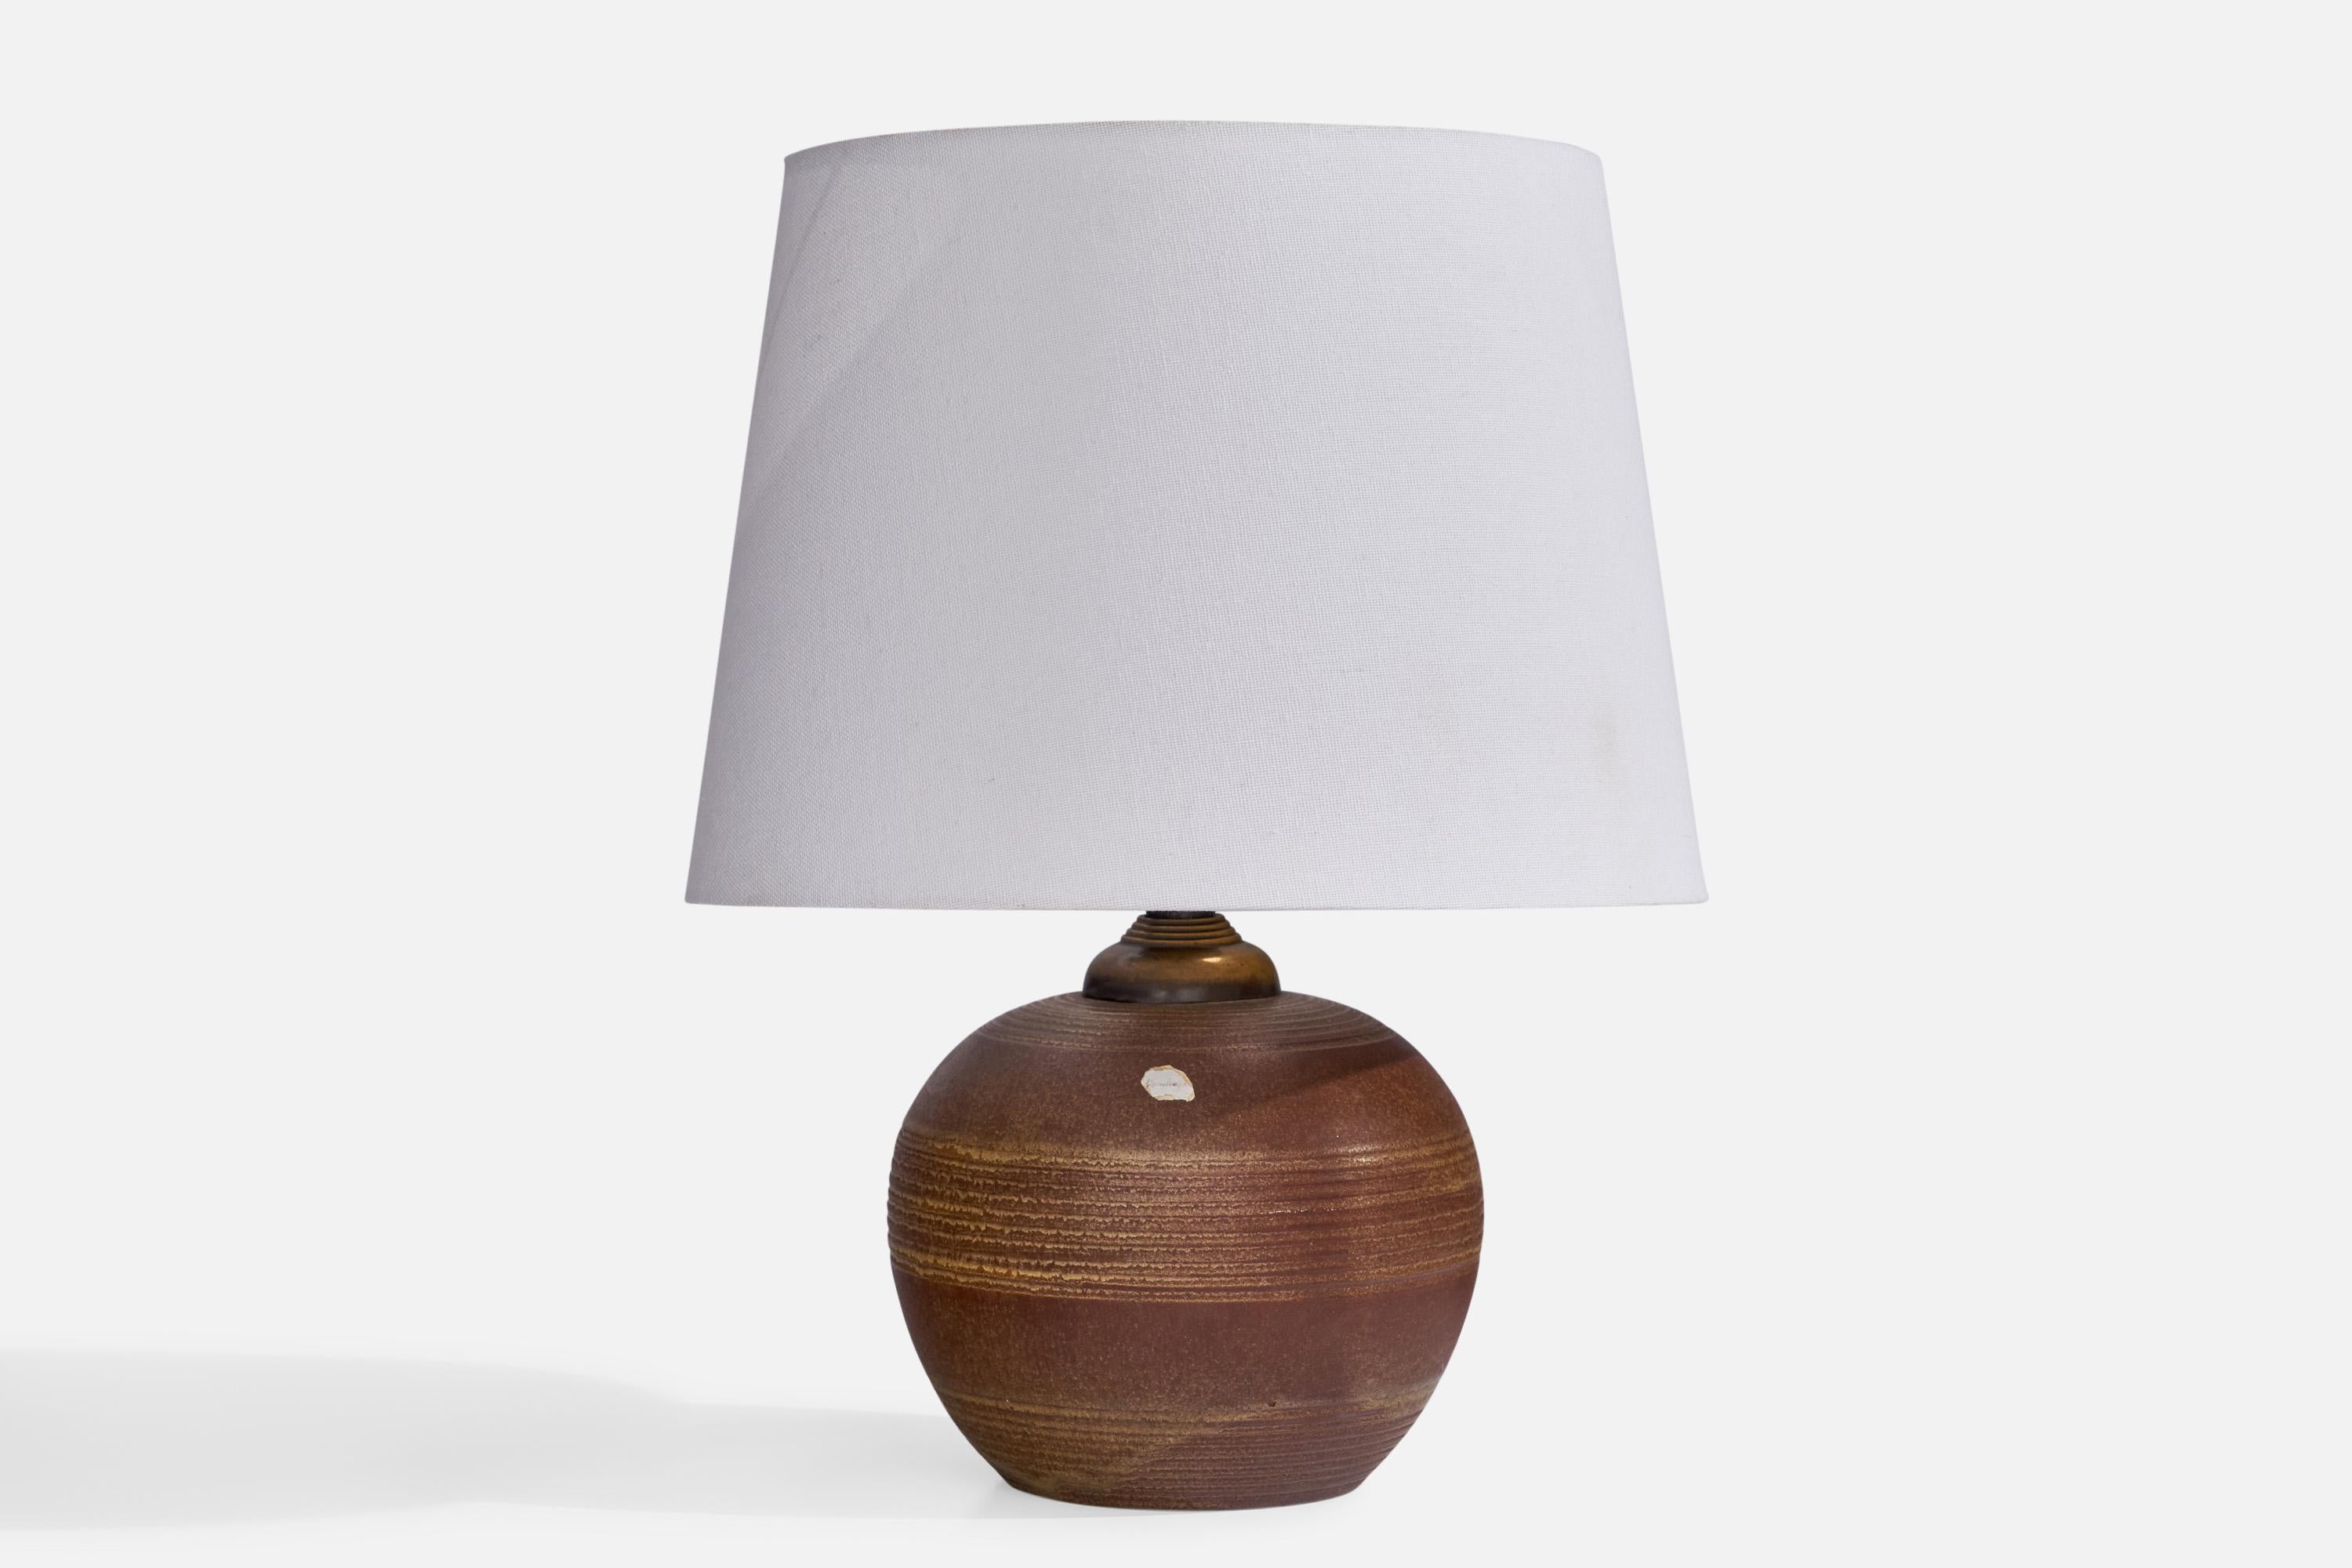 Lampe de table en faïence émaillée brune et en laiton, conçue et produite par Upsala Ekeby, Suède, années 1930.

Dimensions de la lampe (pouces) : 8.25